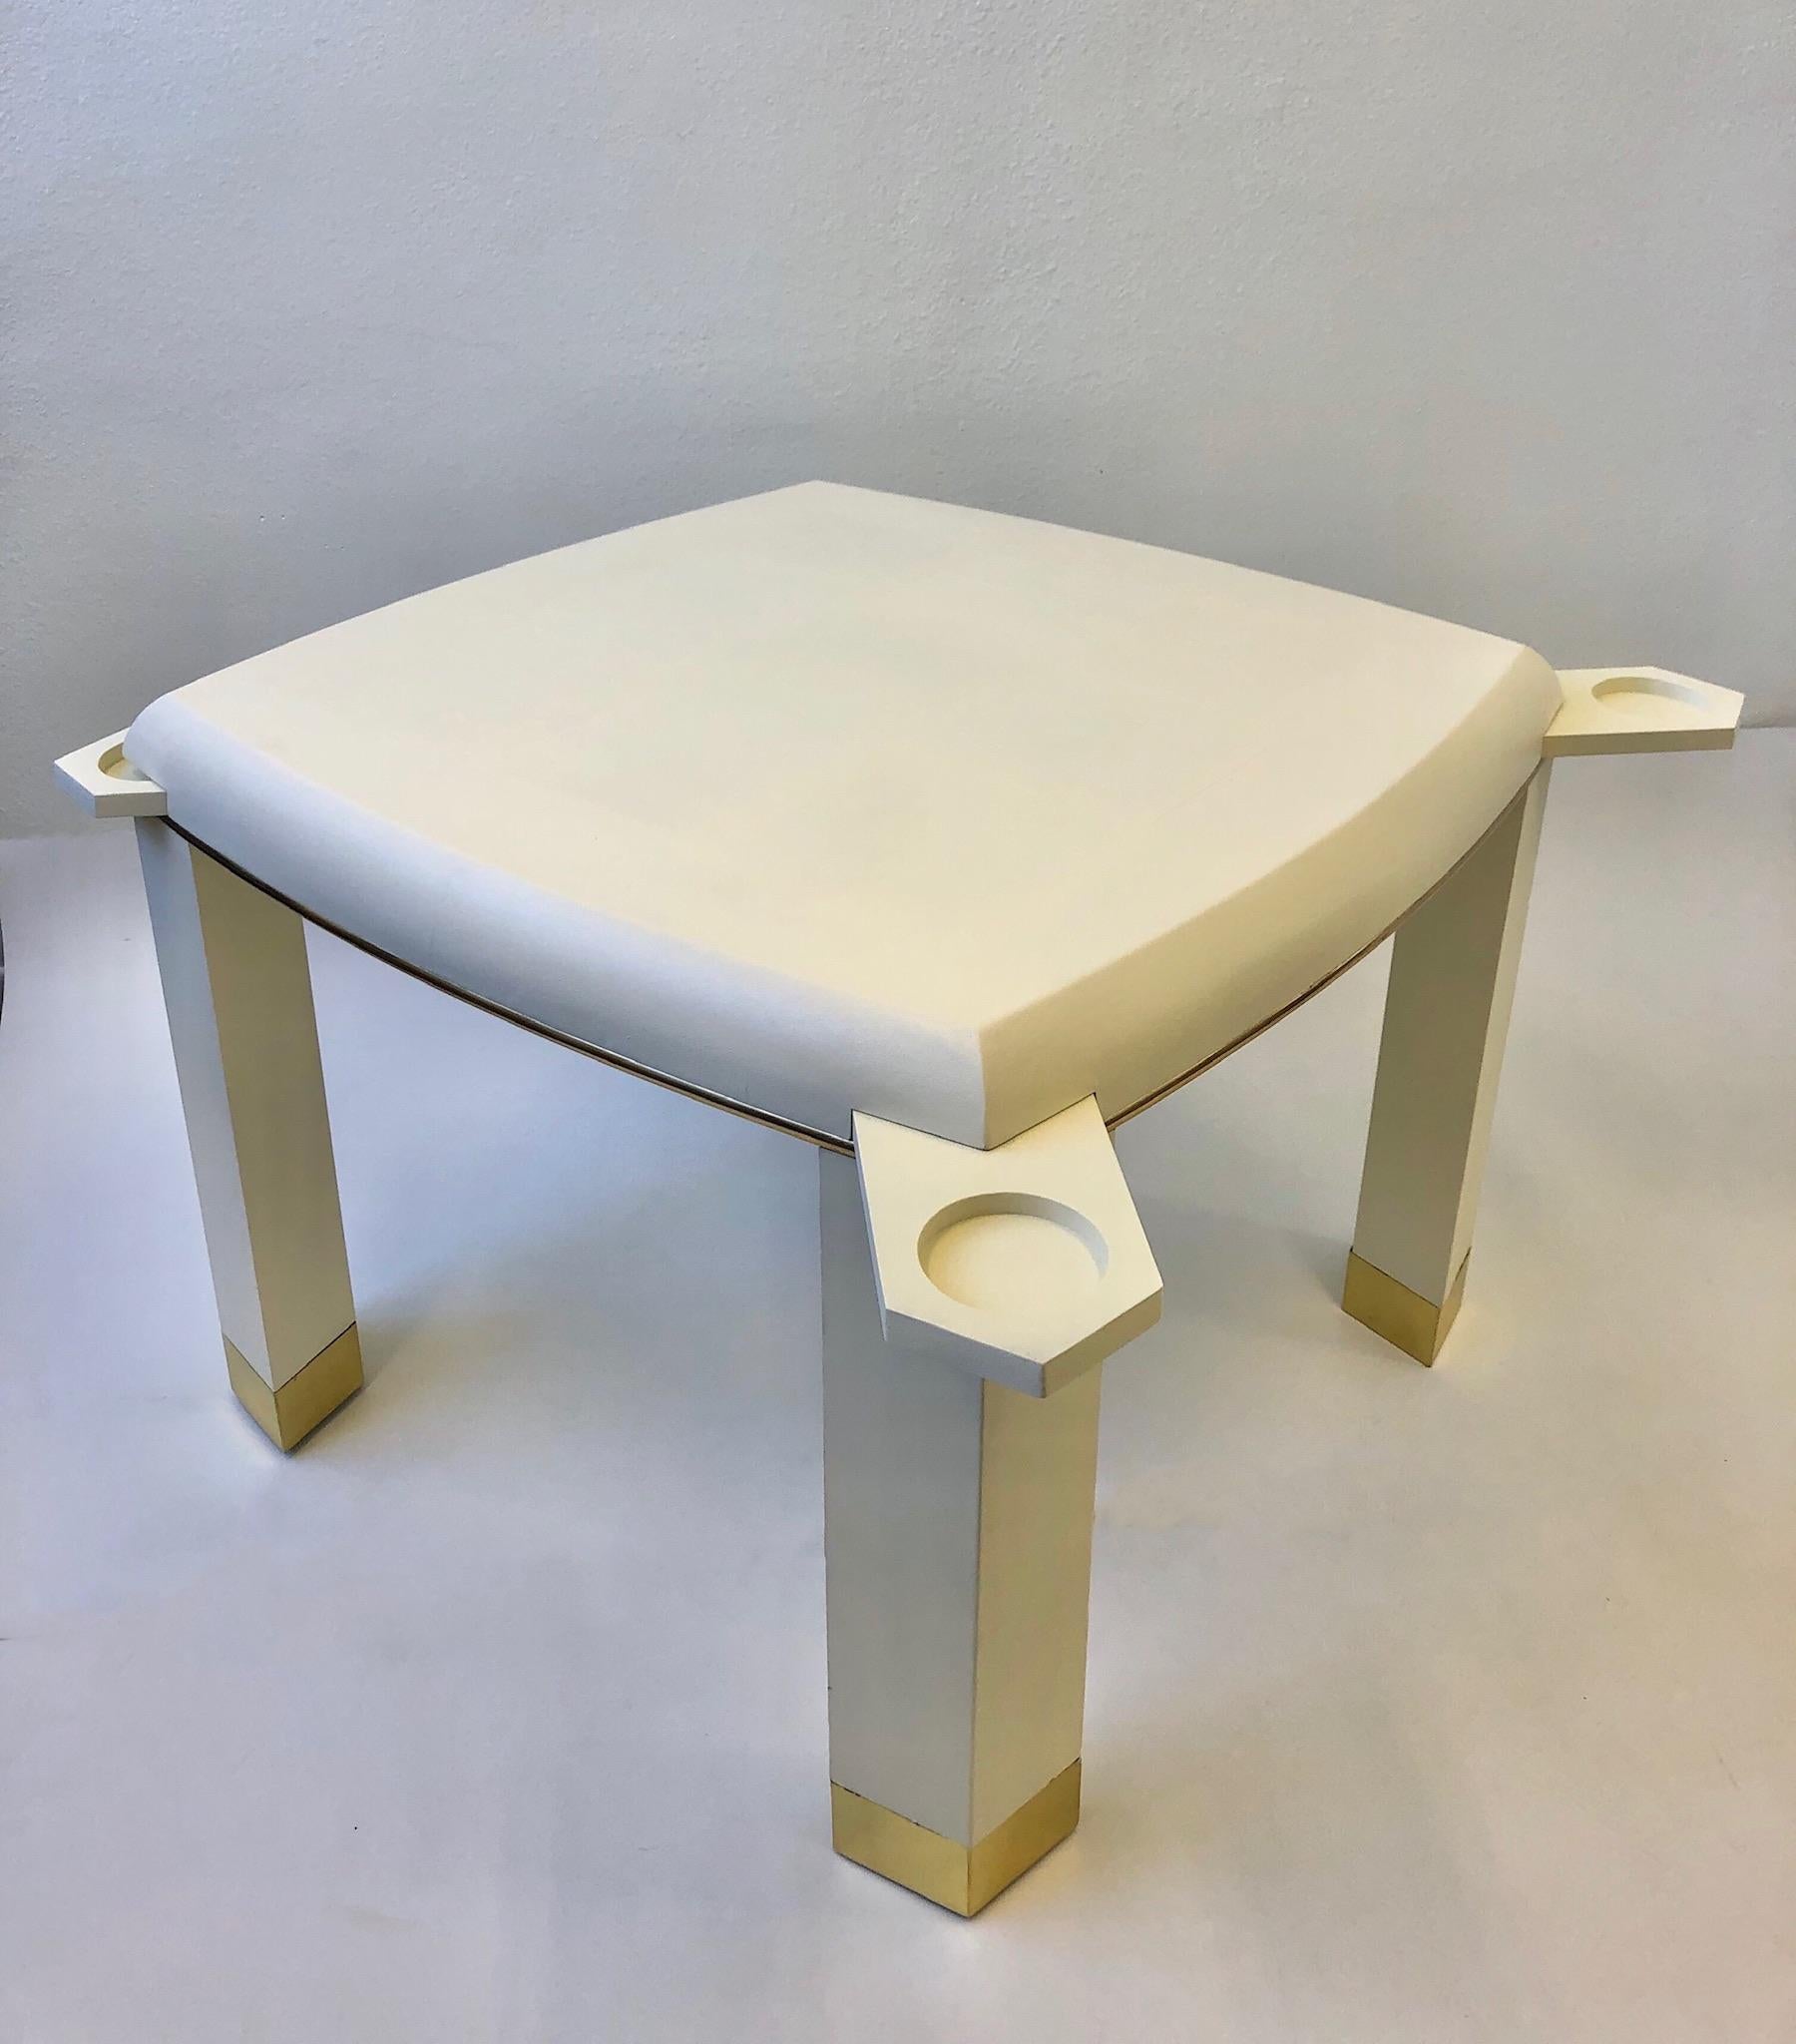 Ein glamouröser Spieltisch mit verstecktem Getränke- oder Aschenbecherhalter im Stil des berühmten Designers Karl Springer aus den 1980er Jahren. Der Tisch besteht aus Holz, das mit cremeweißem, schlangengeprägtem Leder und polierten Messingdetails